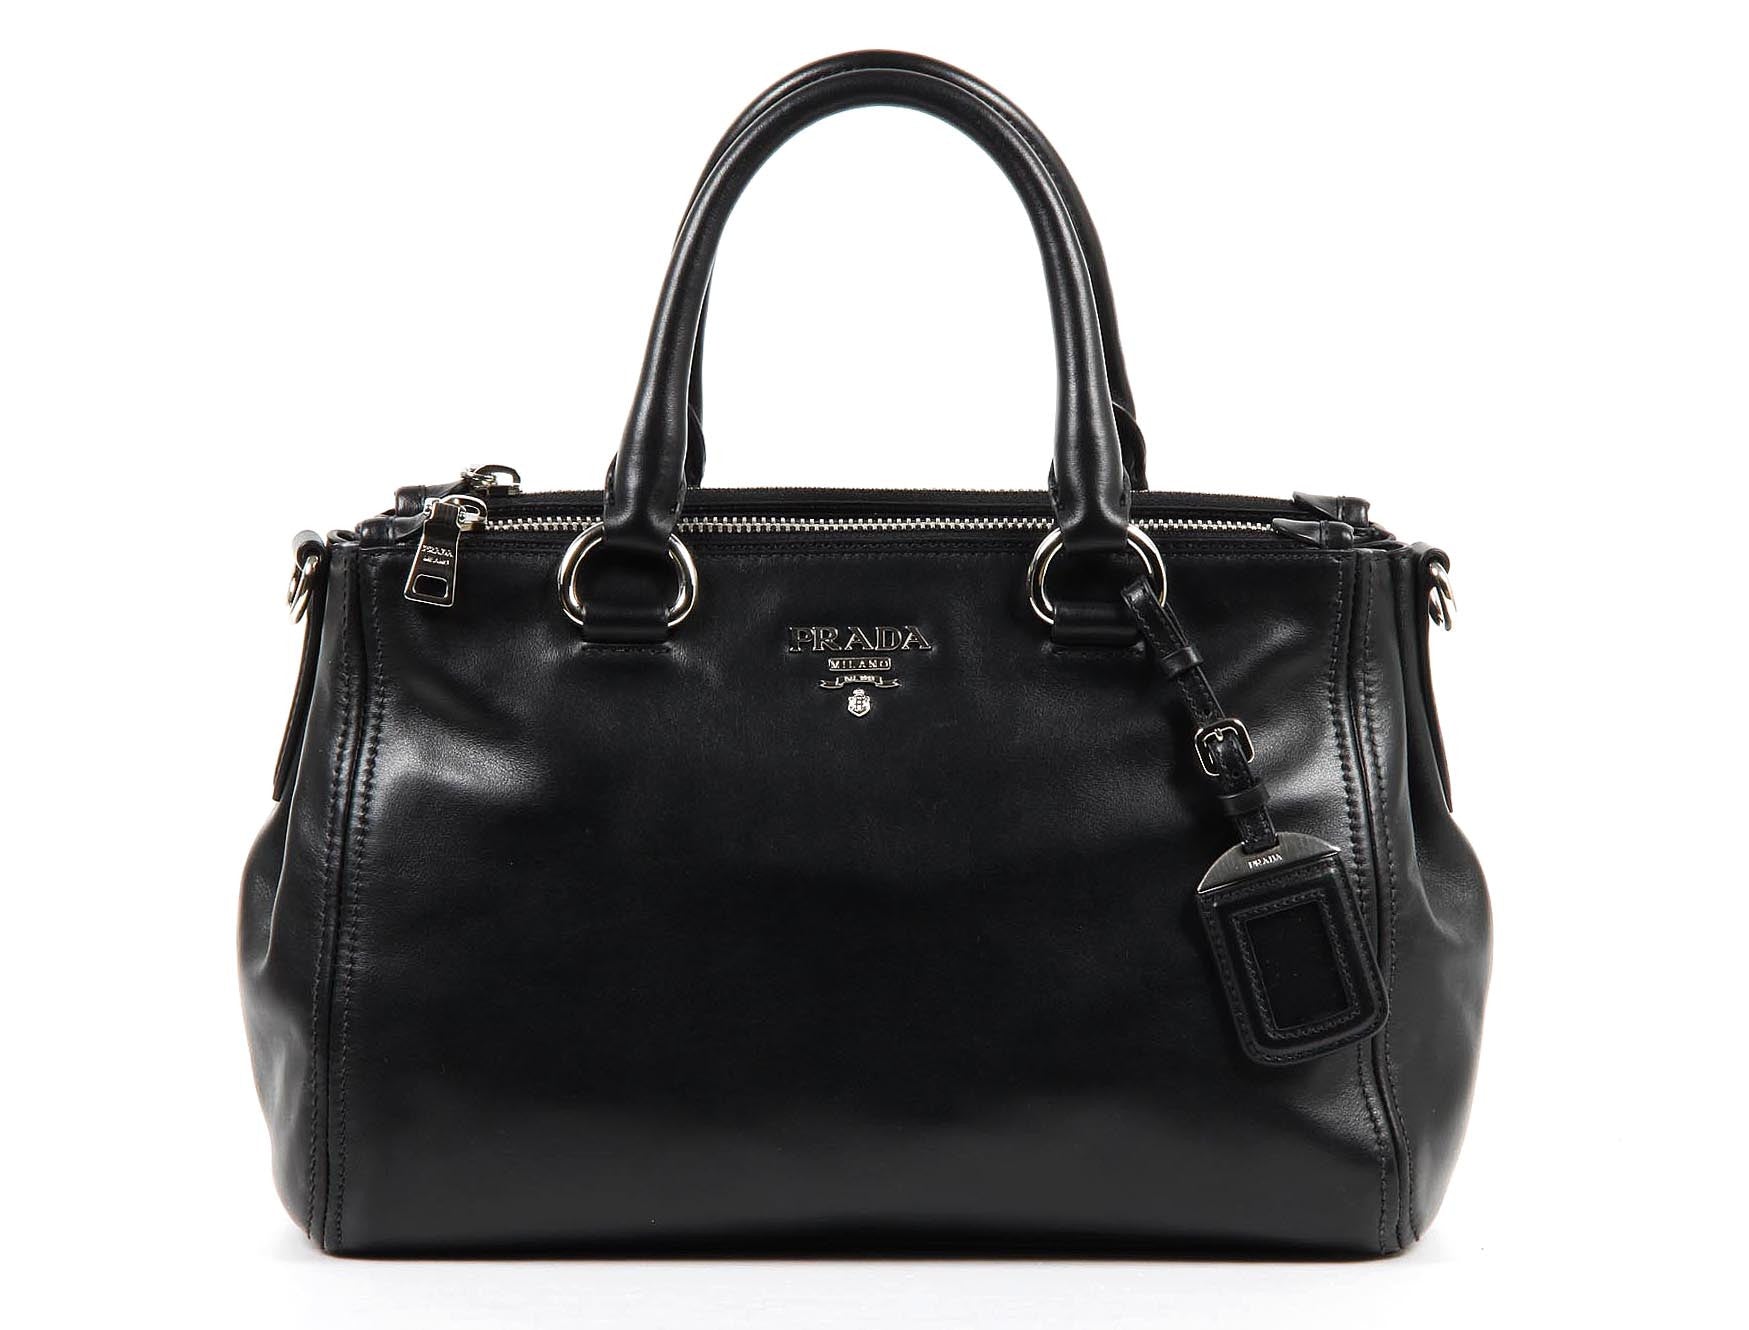 Prada shopping tote handbag BN2866 Nero Soft Calf